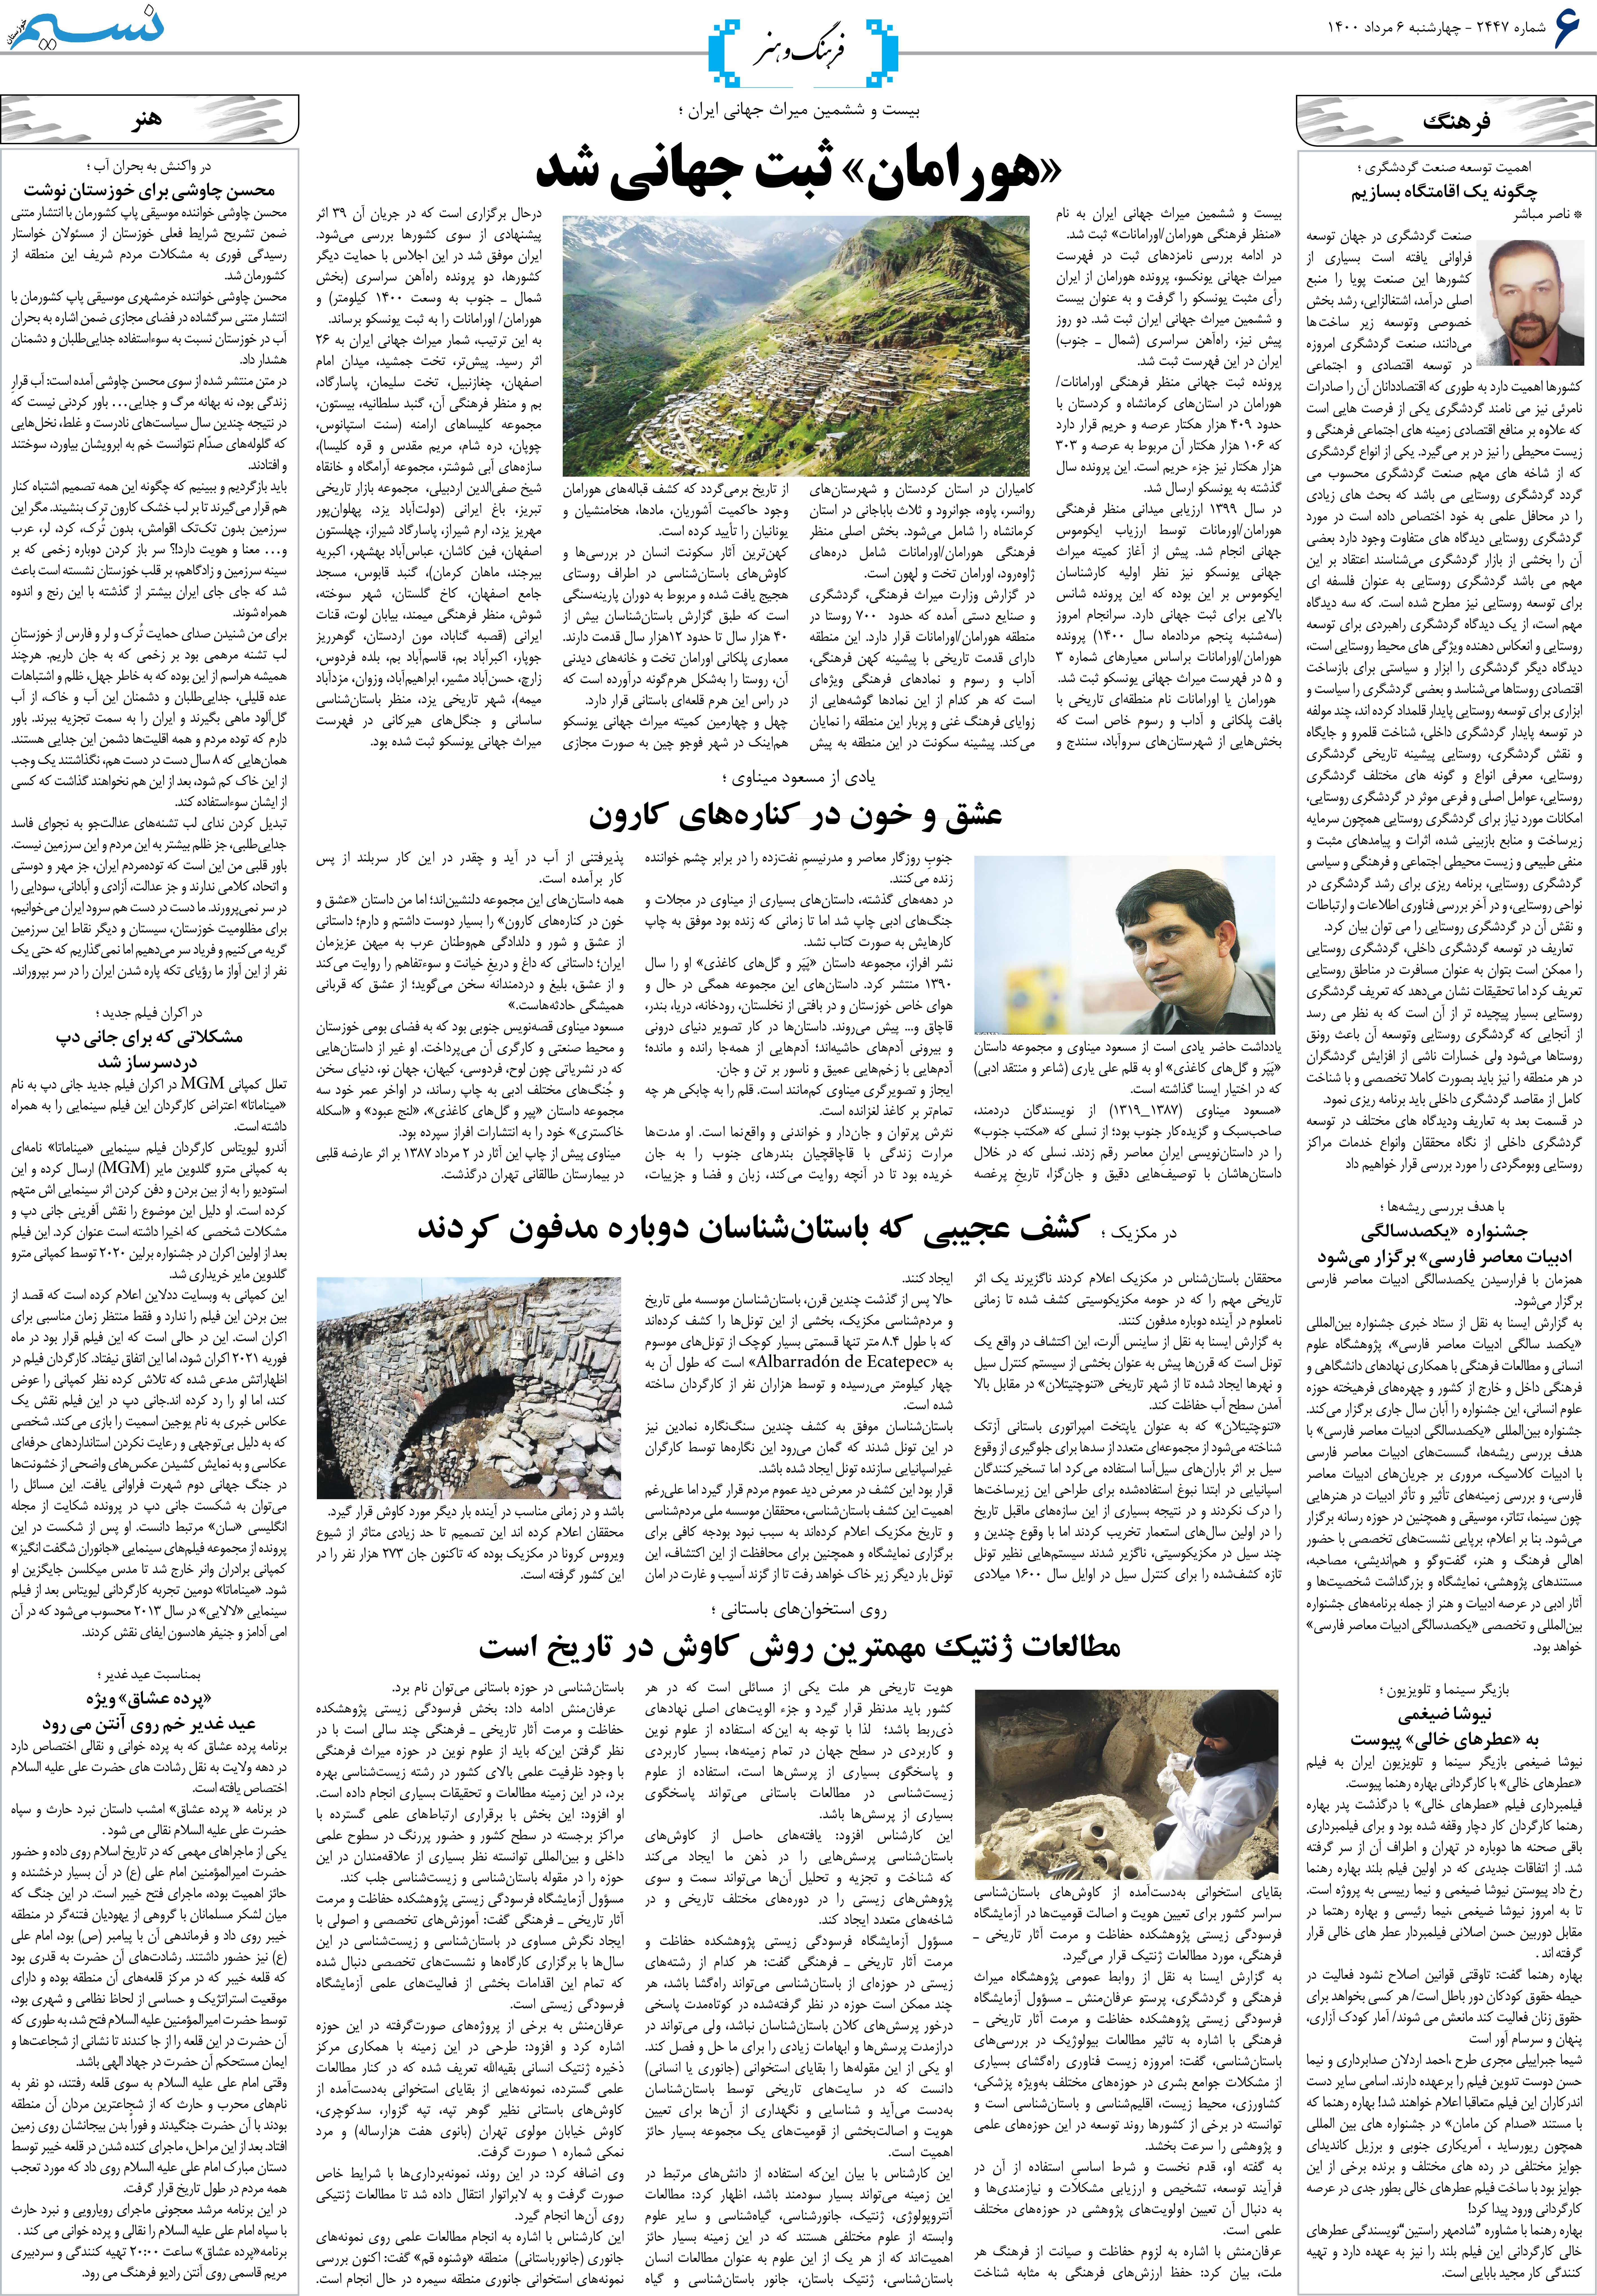 صفحه فرهنگ و هنر روزنامه نسیم شماره 2447